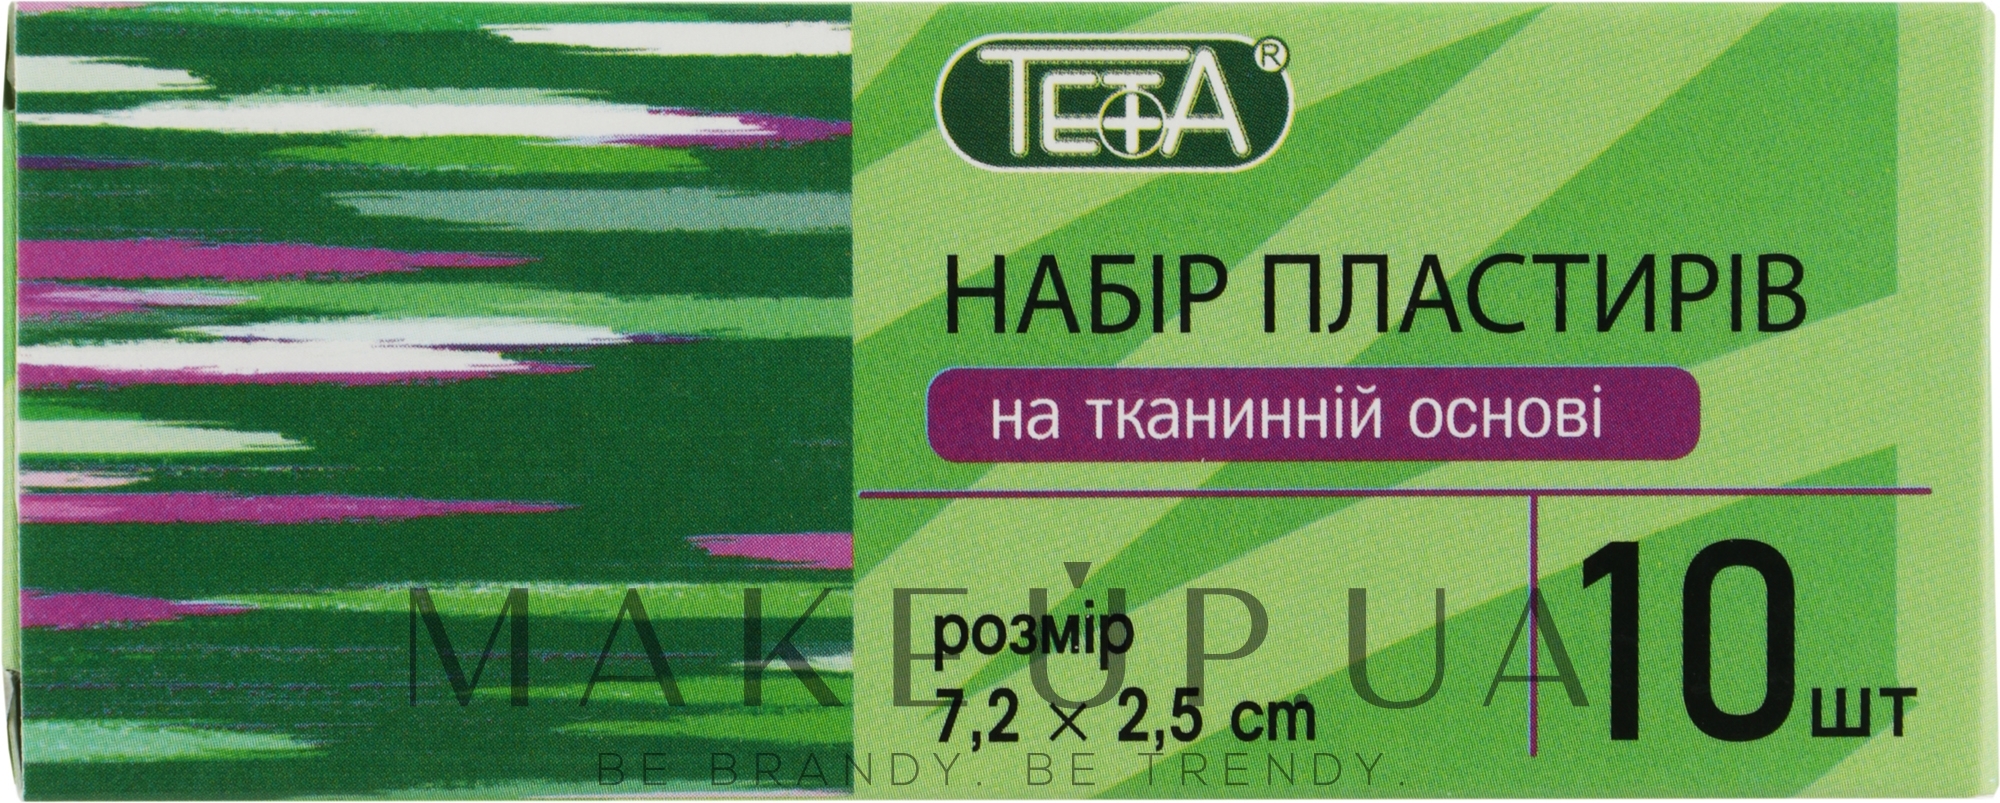 Набір пластирів на тканинній основі 7,2х2,5 см - Teta — фото 10шт